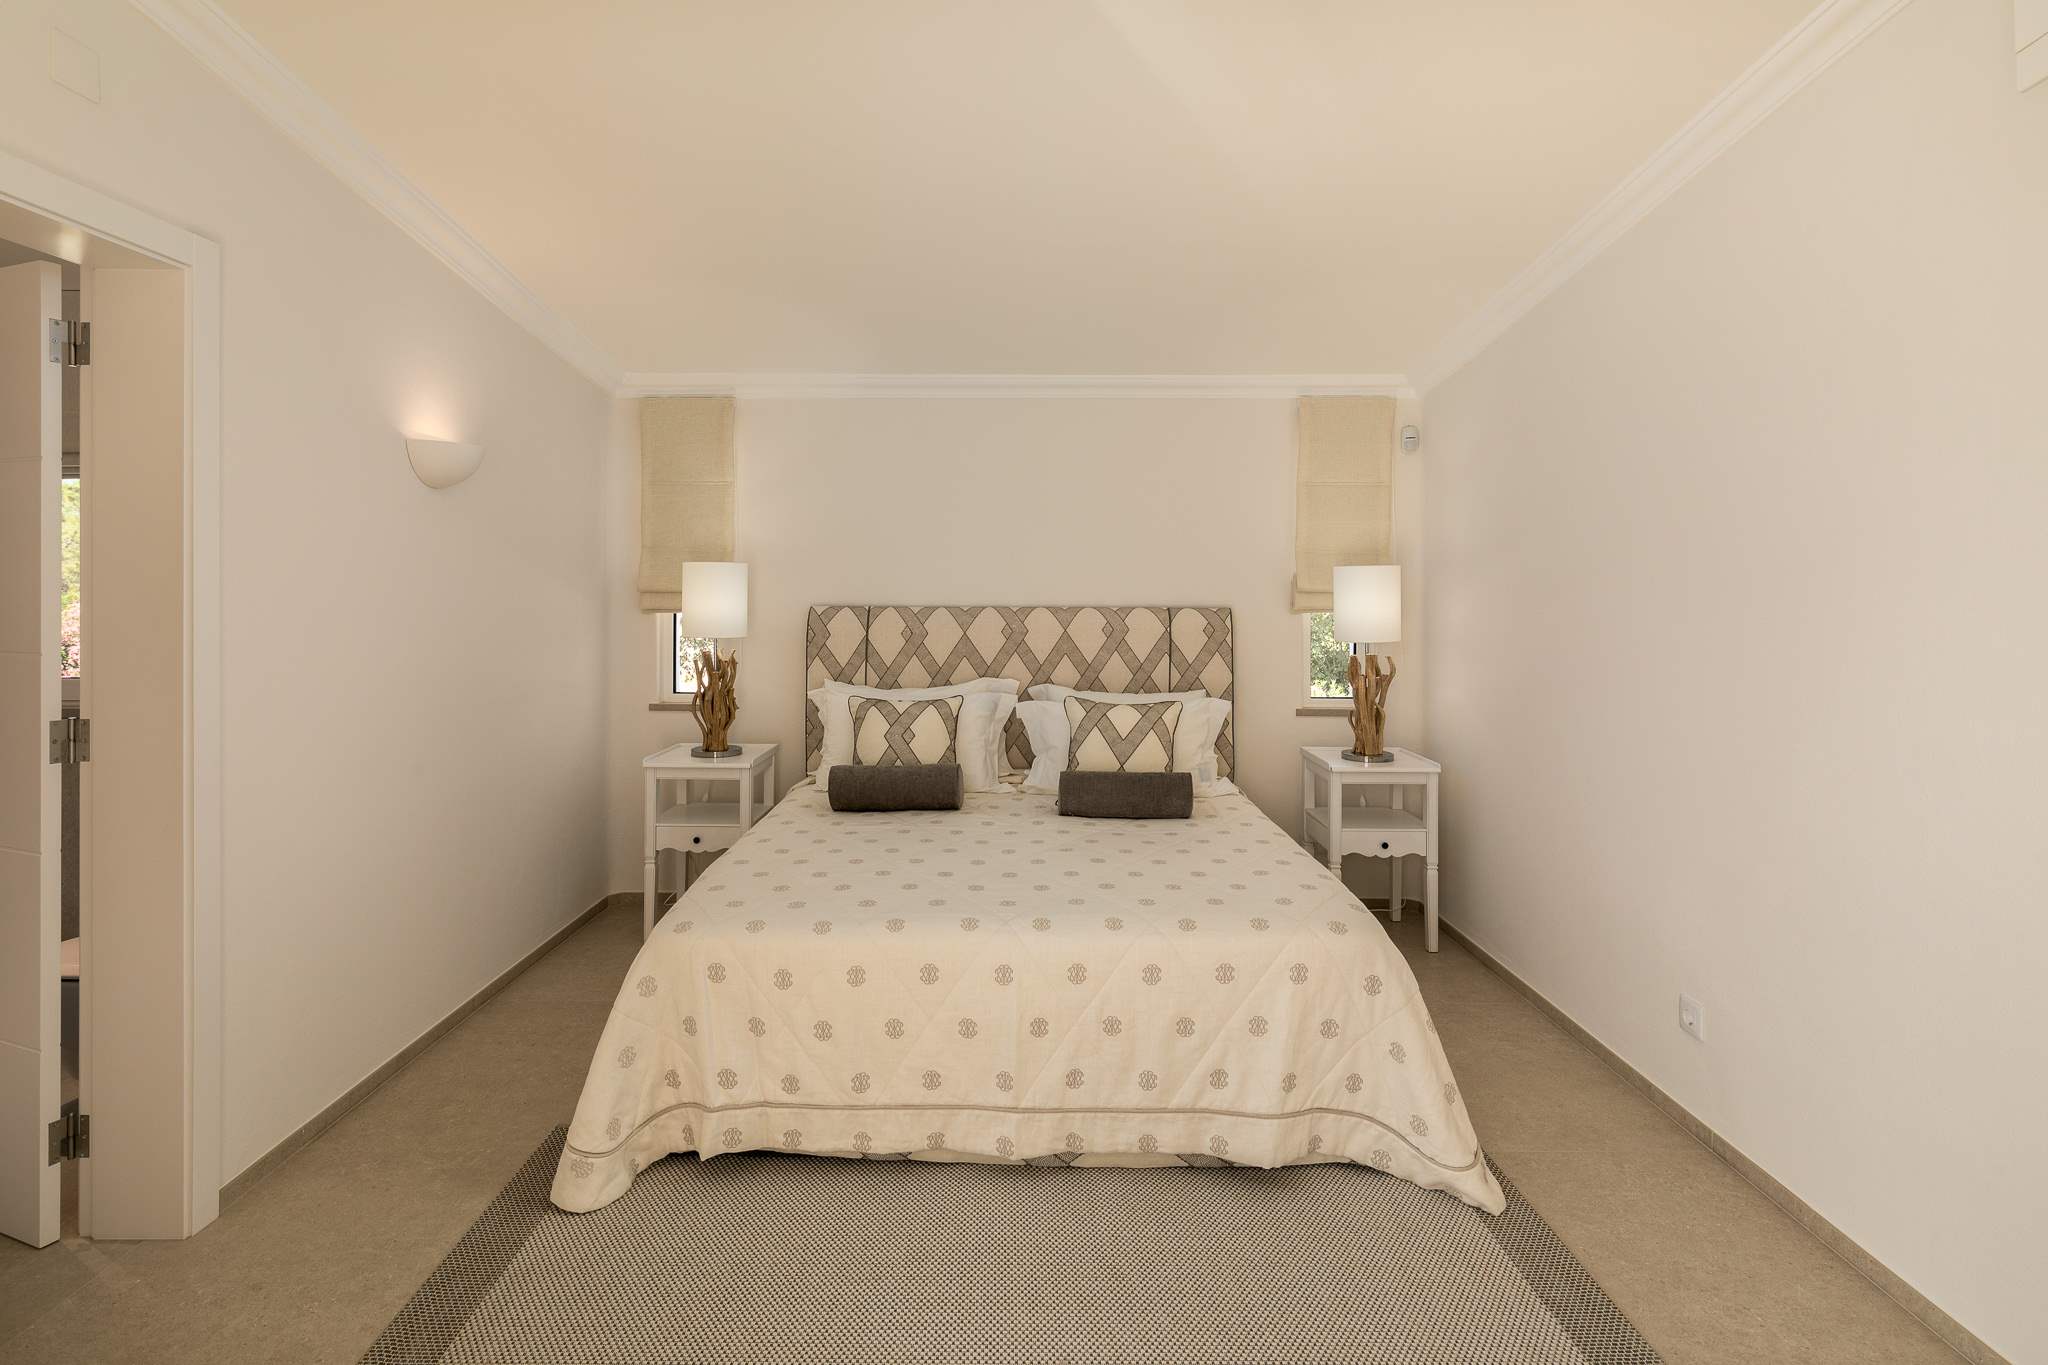 Villa  Monte Golfe, 5 bedroom villa in Quinta do Lago, Algarve Photo #25